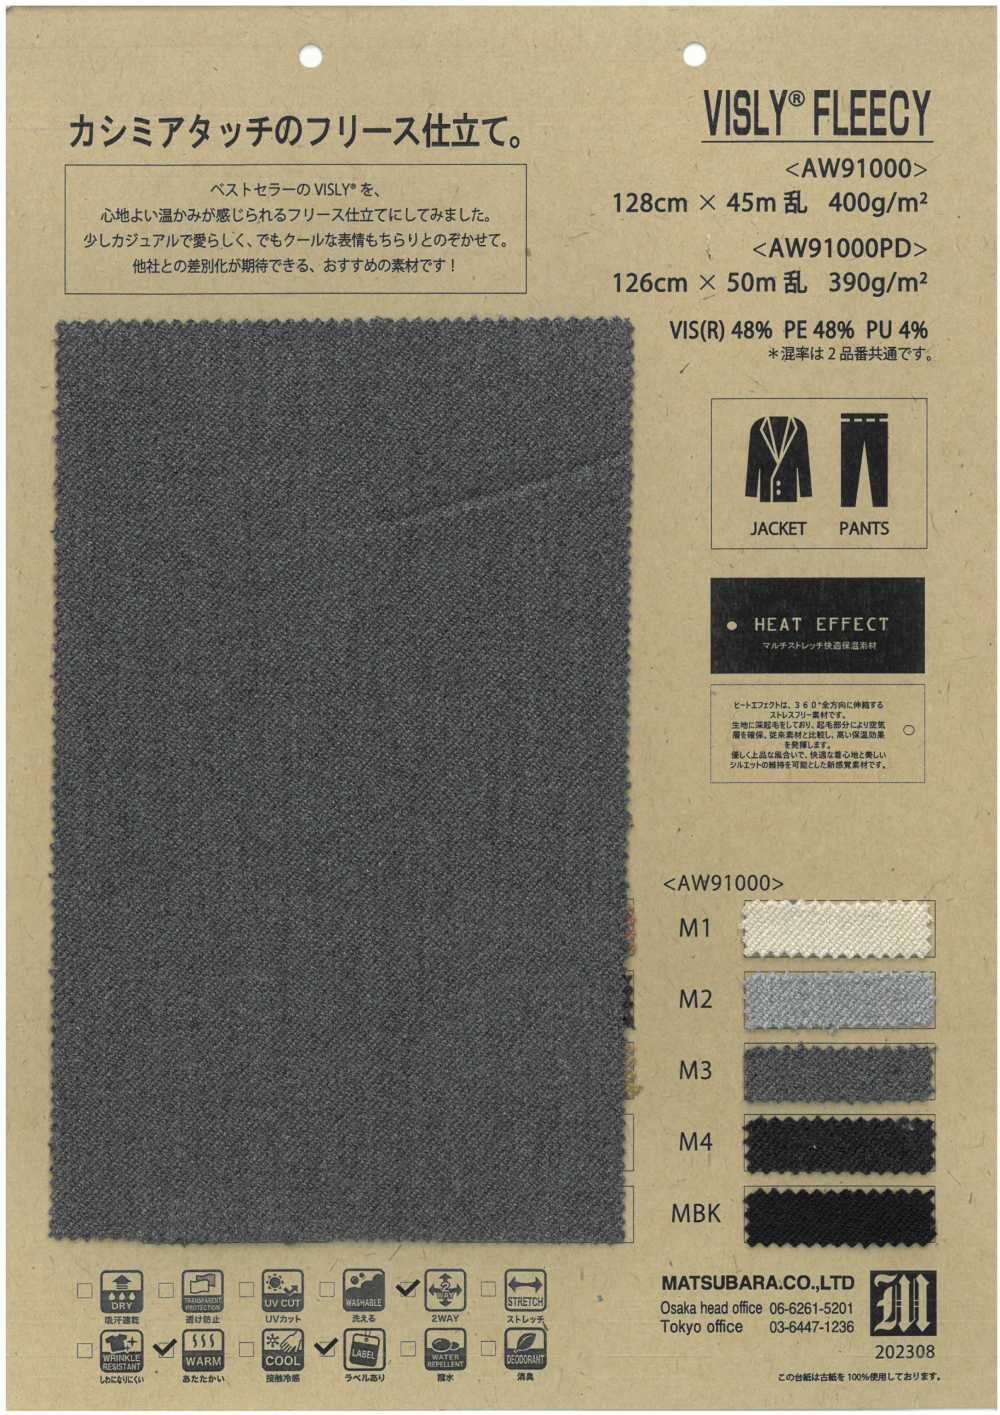 AW91000 VISLY®️ FLEISCH[Textilgewebe] Matsubara